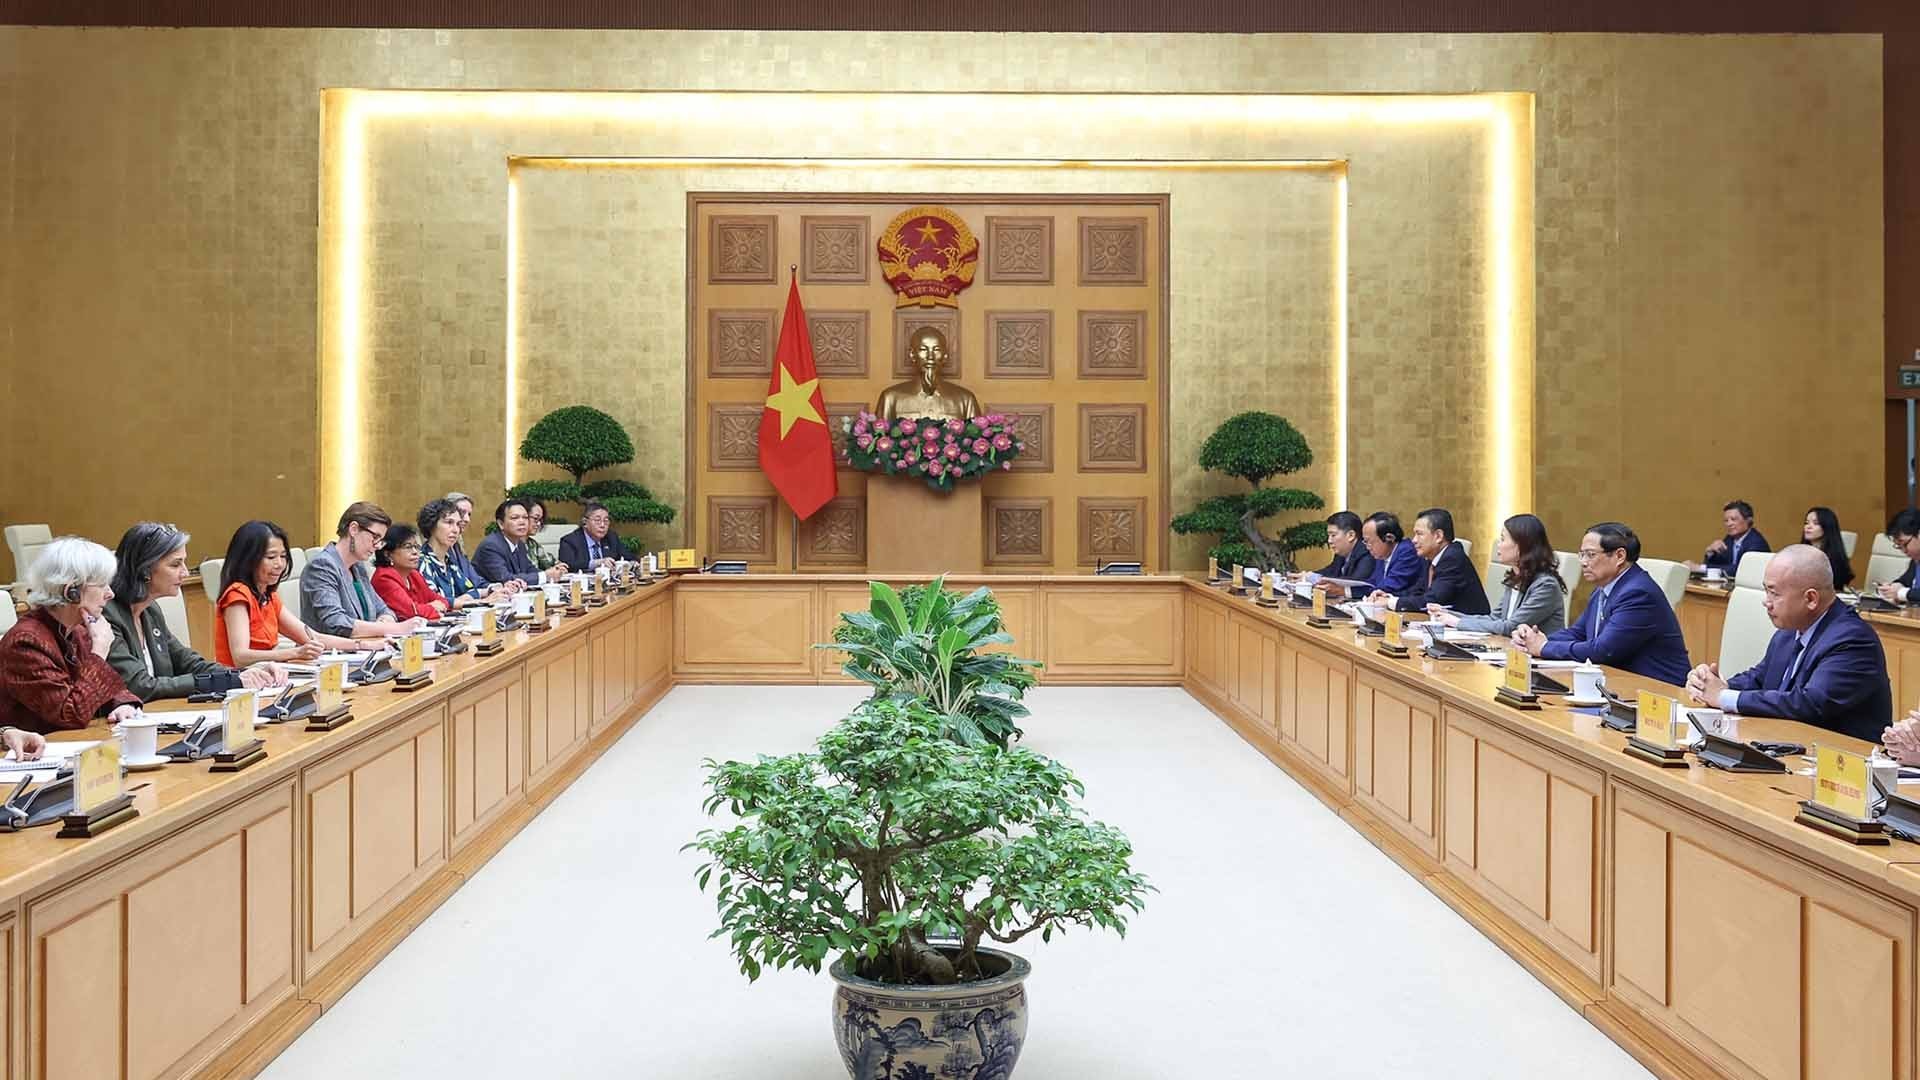 Thủ tướng tiếp Điều phối viên thường trú và Trưởng đại diện các tổ chức Liên hợp quốc tại Việt Nam